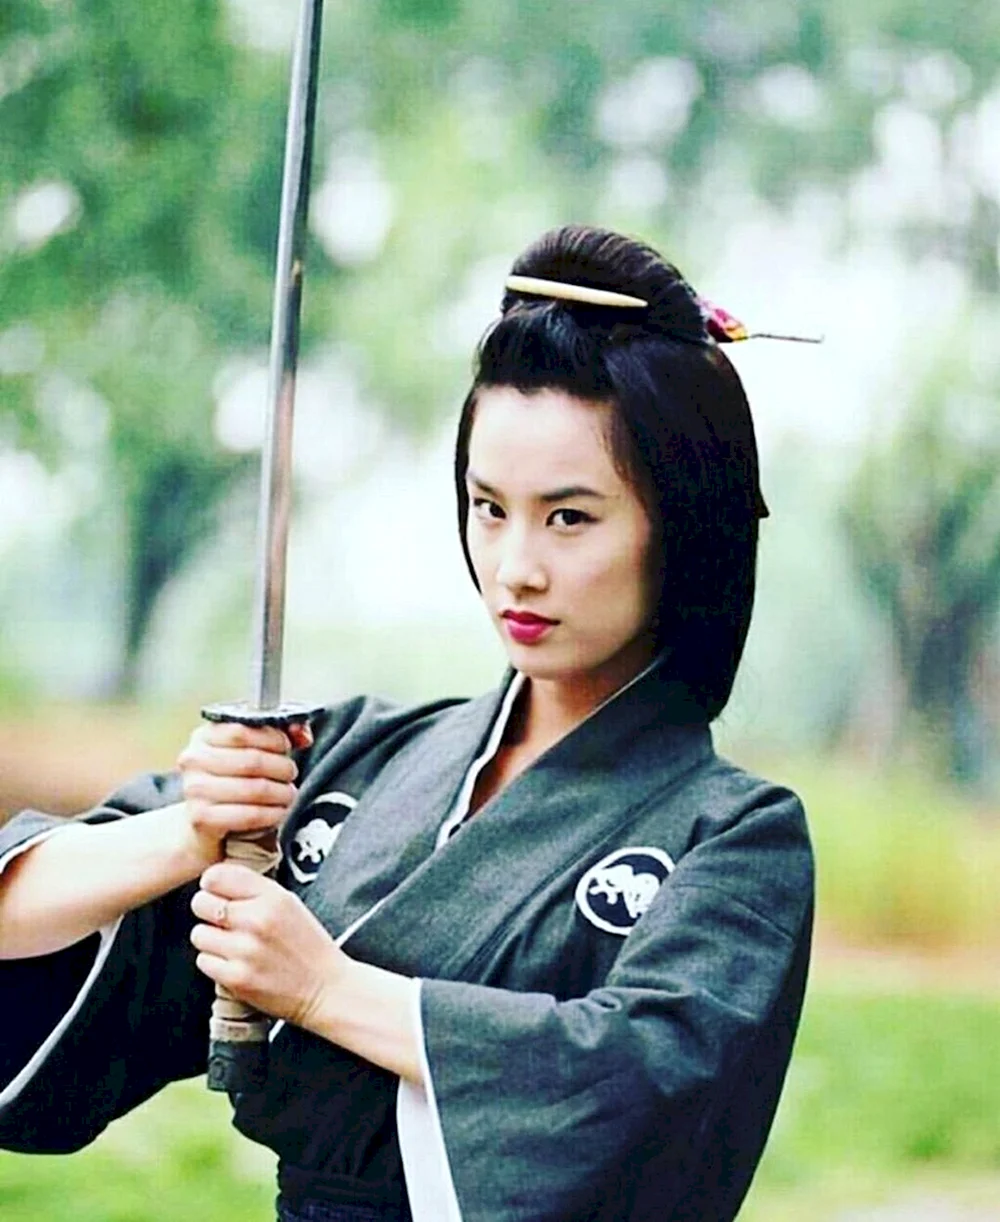 Samurai woman